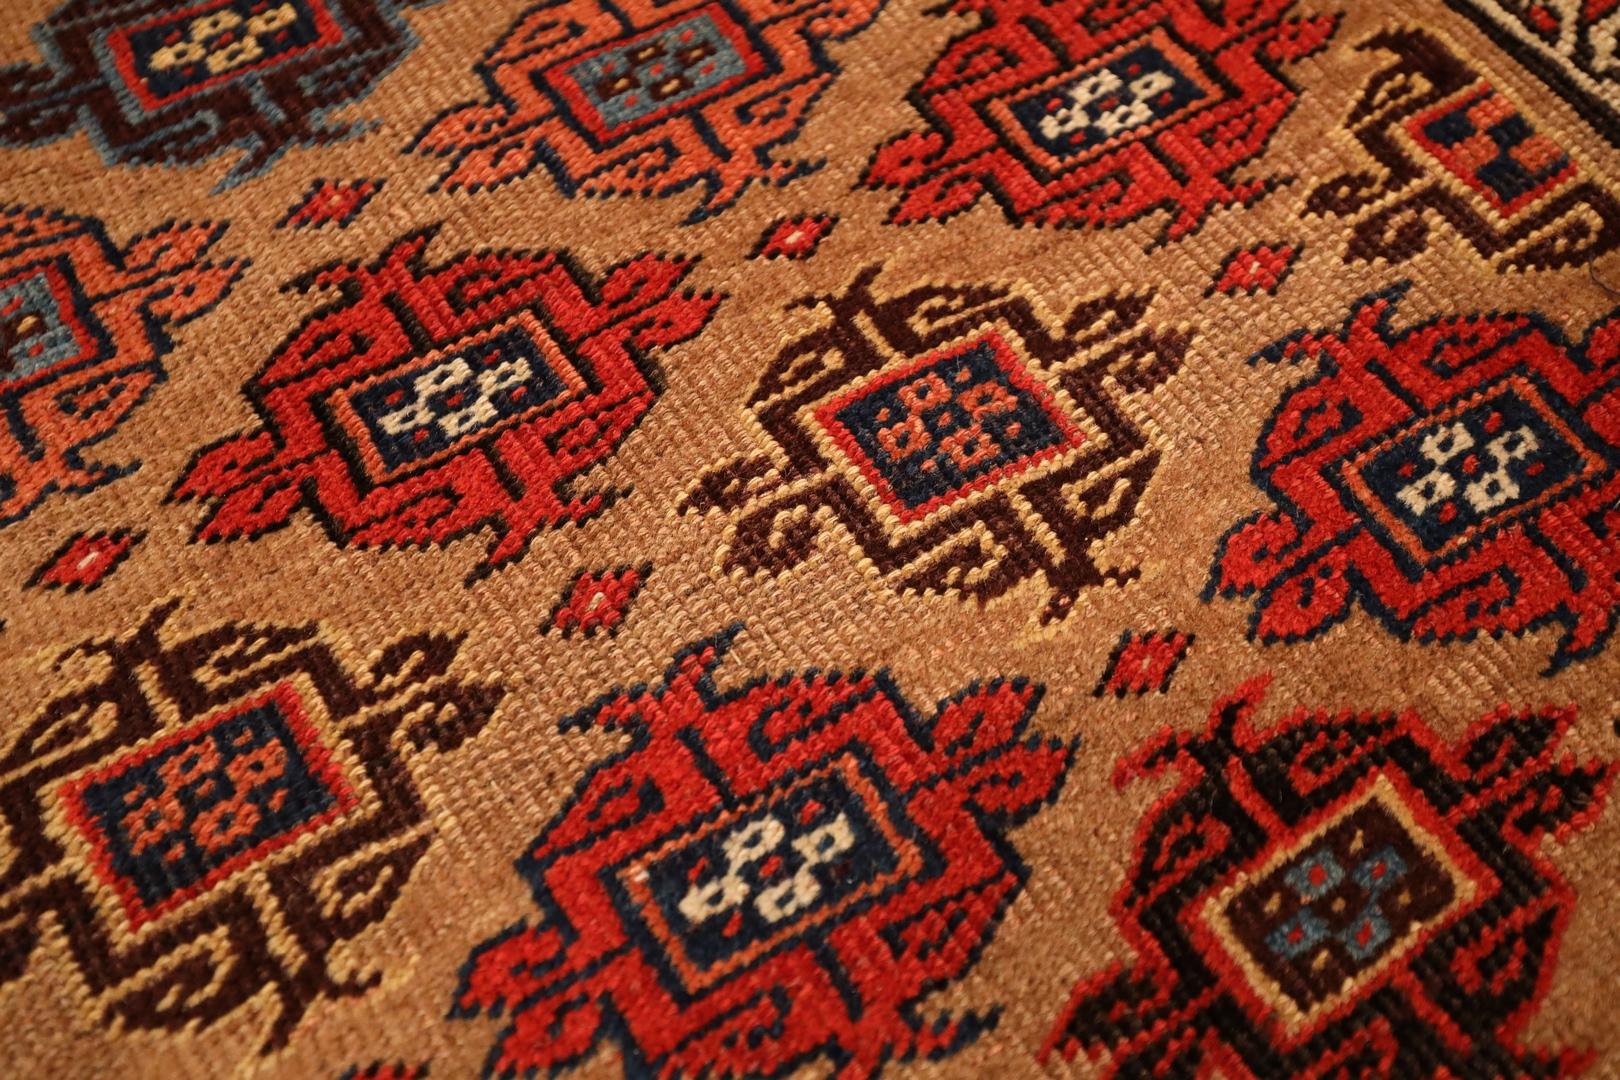 Kurd-Bidjar Antique Rug, Beige Red Blue, Wool Foundation - 3'9